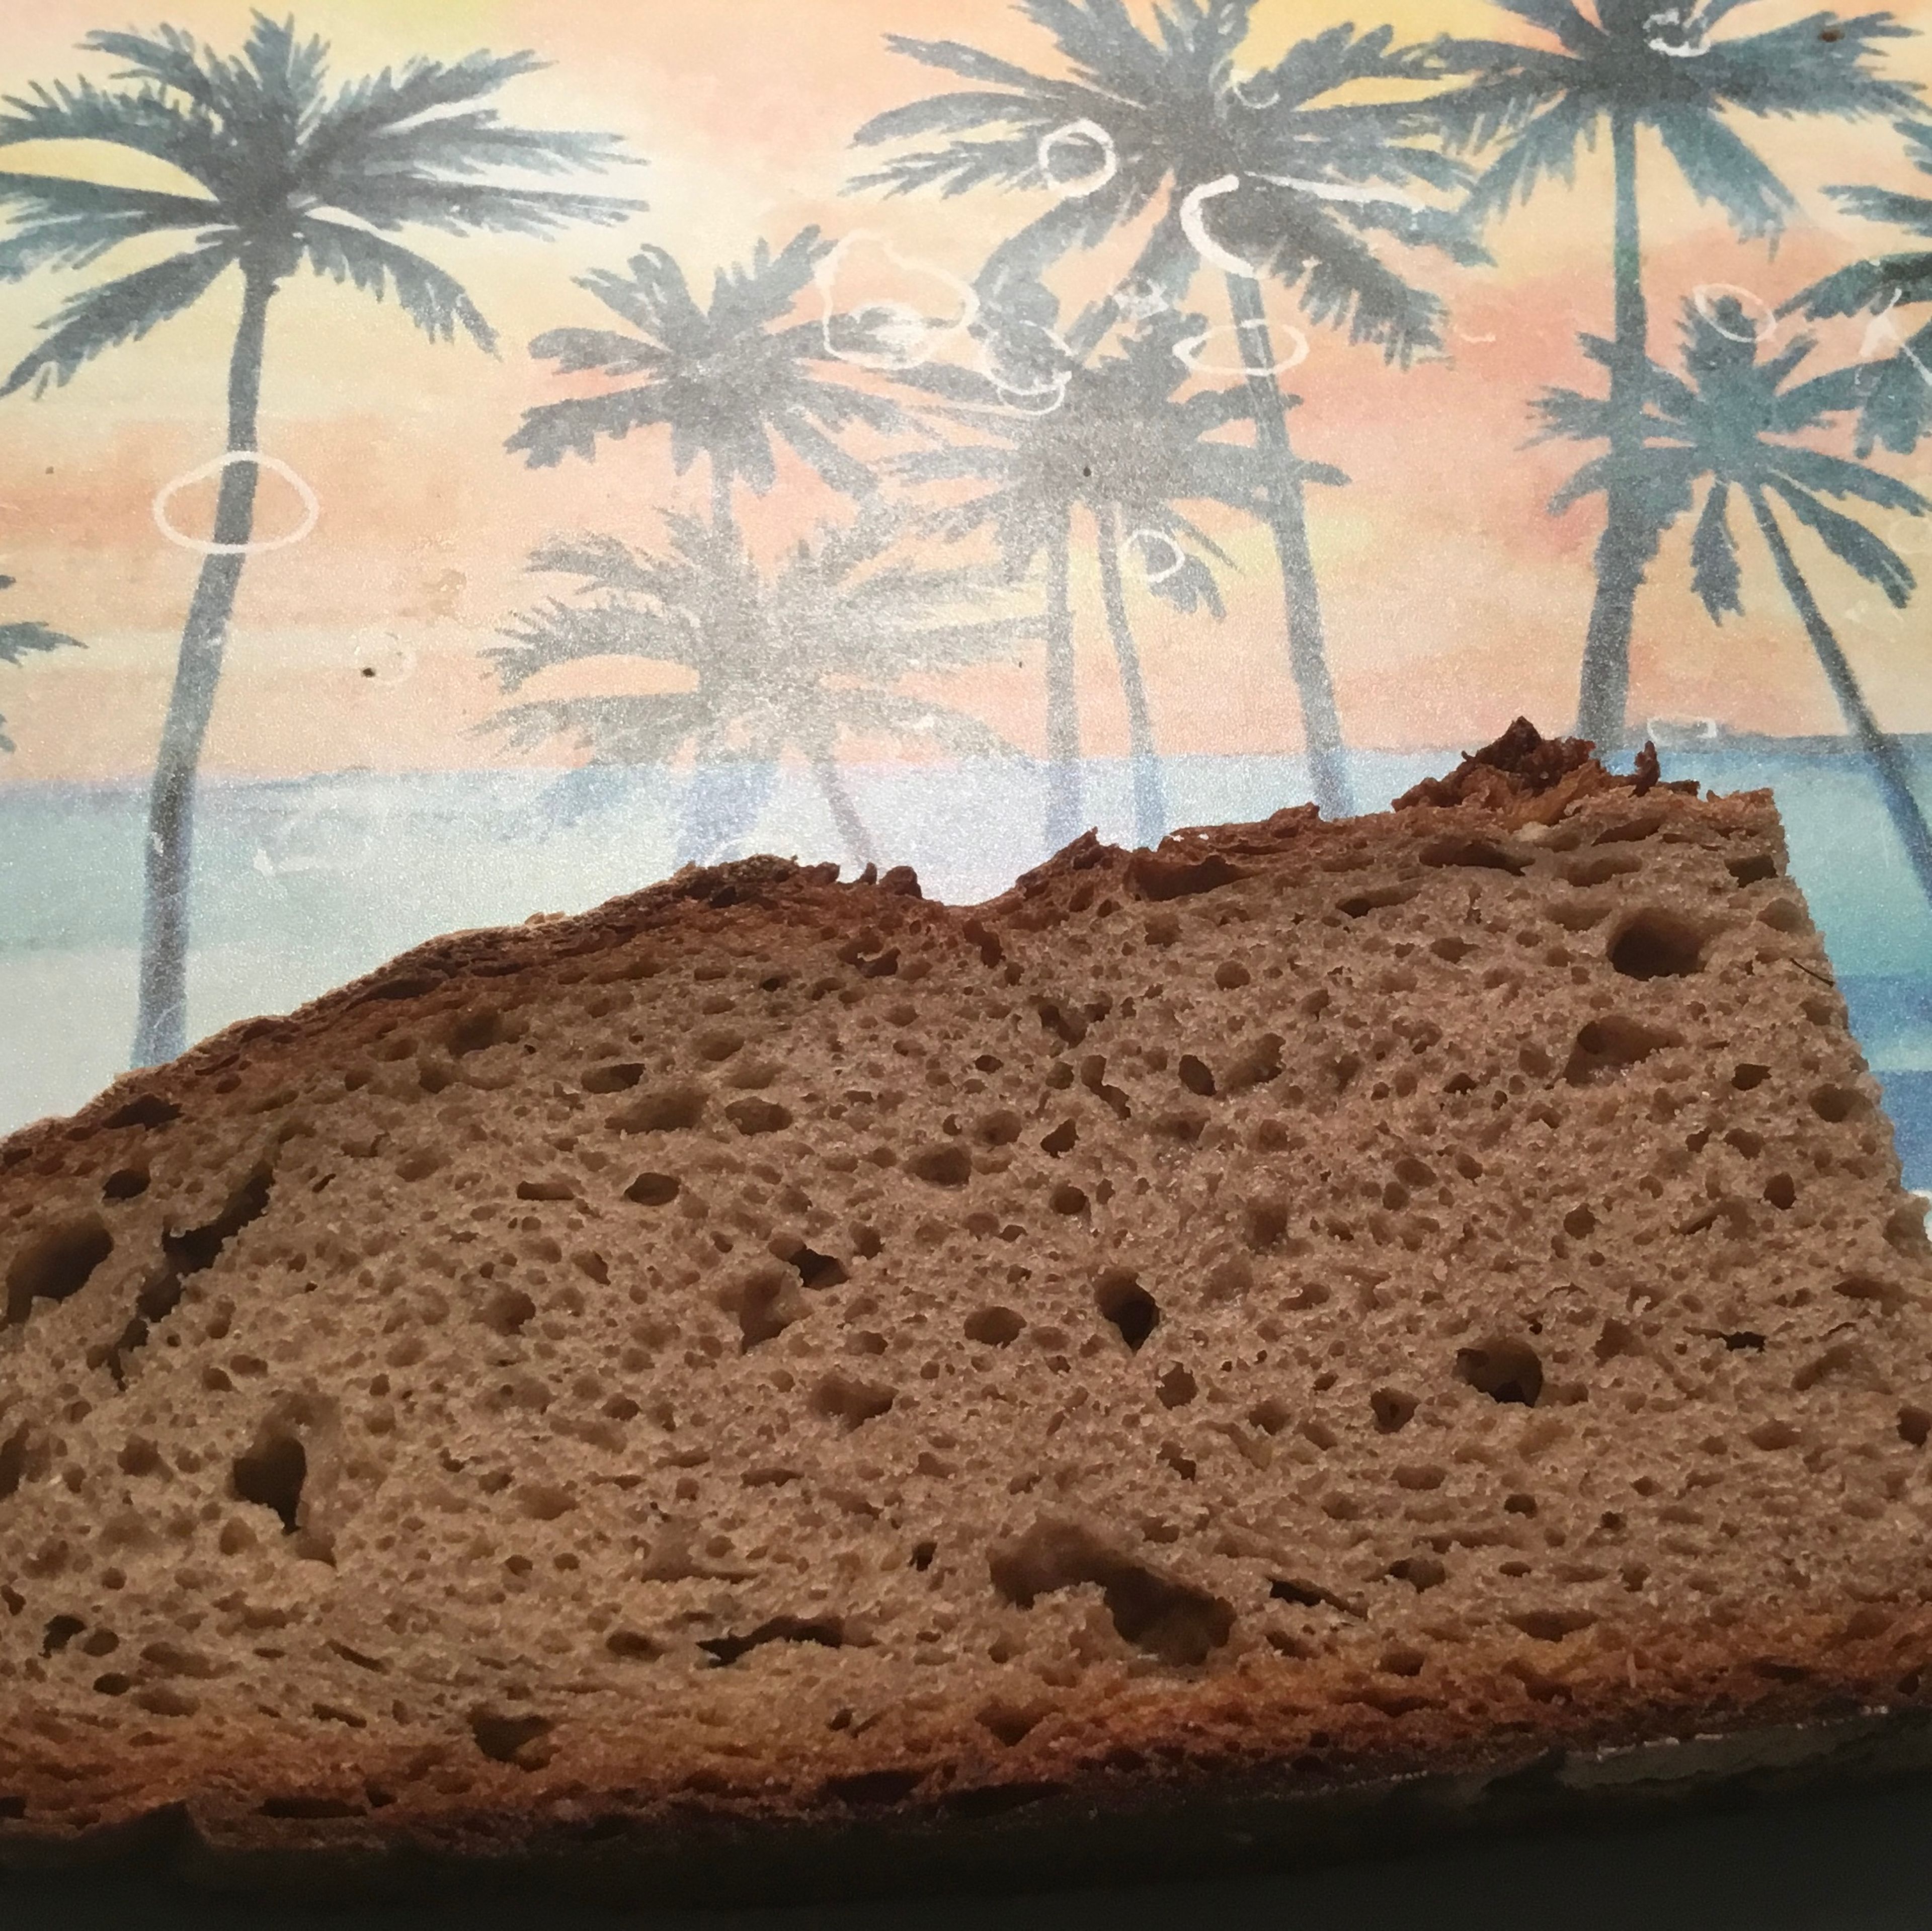 …wenn a Brot, dann so a feinblasiges Holzofenbrot nur mit Natursauerteig vom Bäcker neben an …